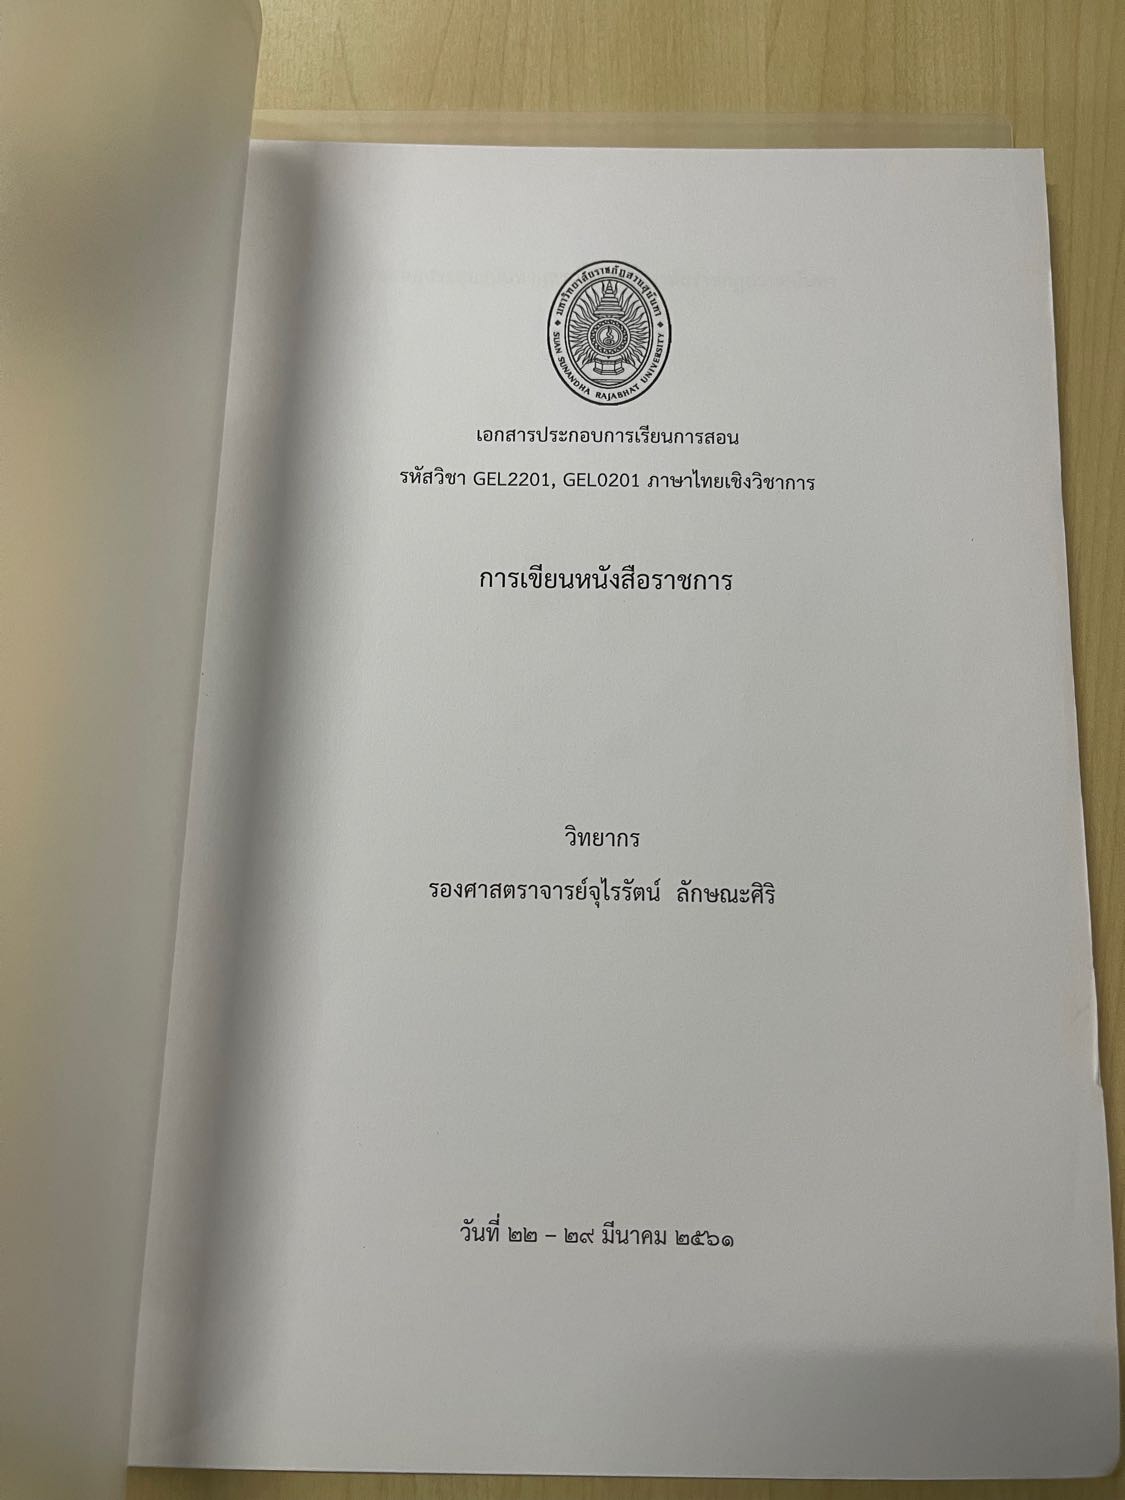 อย่าบอกว่า ภาษาไทยง่าย ถ้ายังไม่เคยเขียนหนังสือราชการ !!! - Pantip